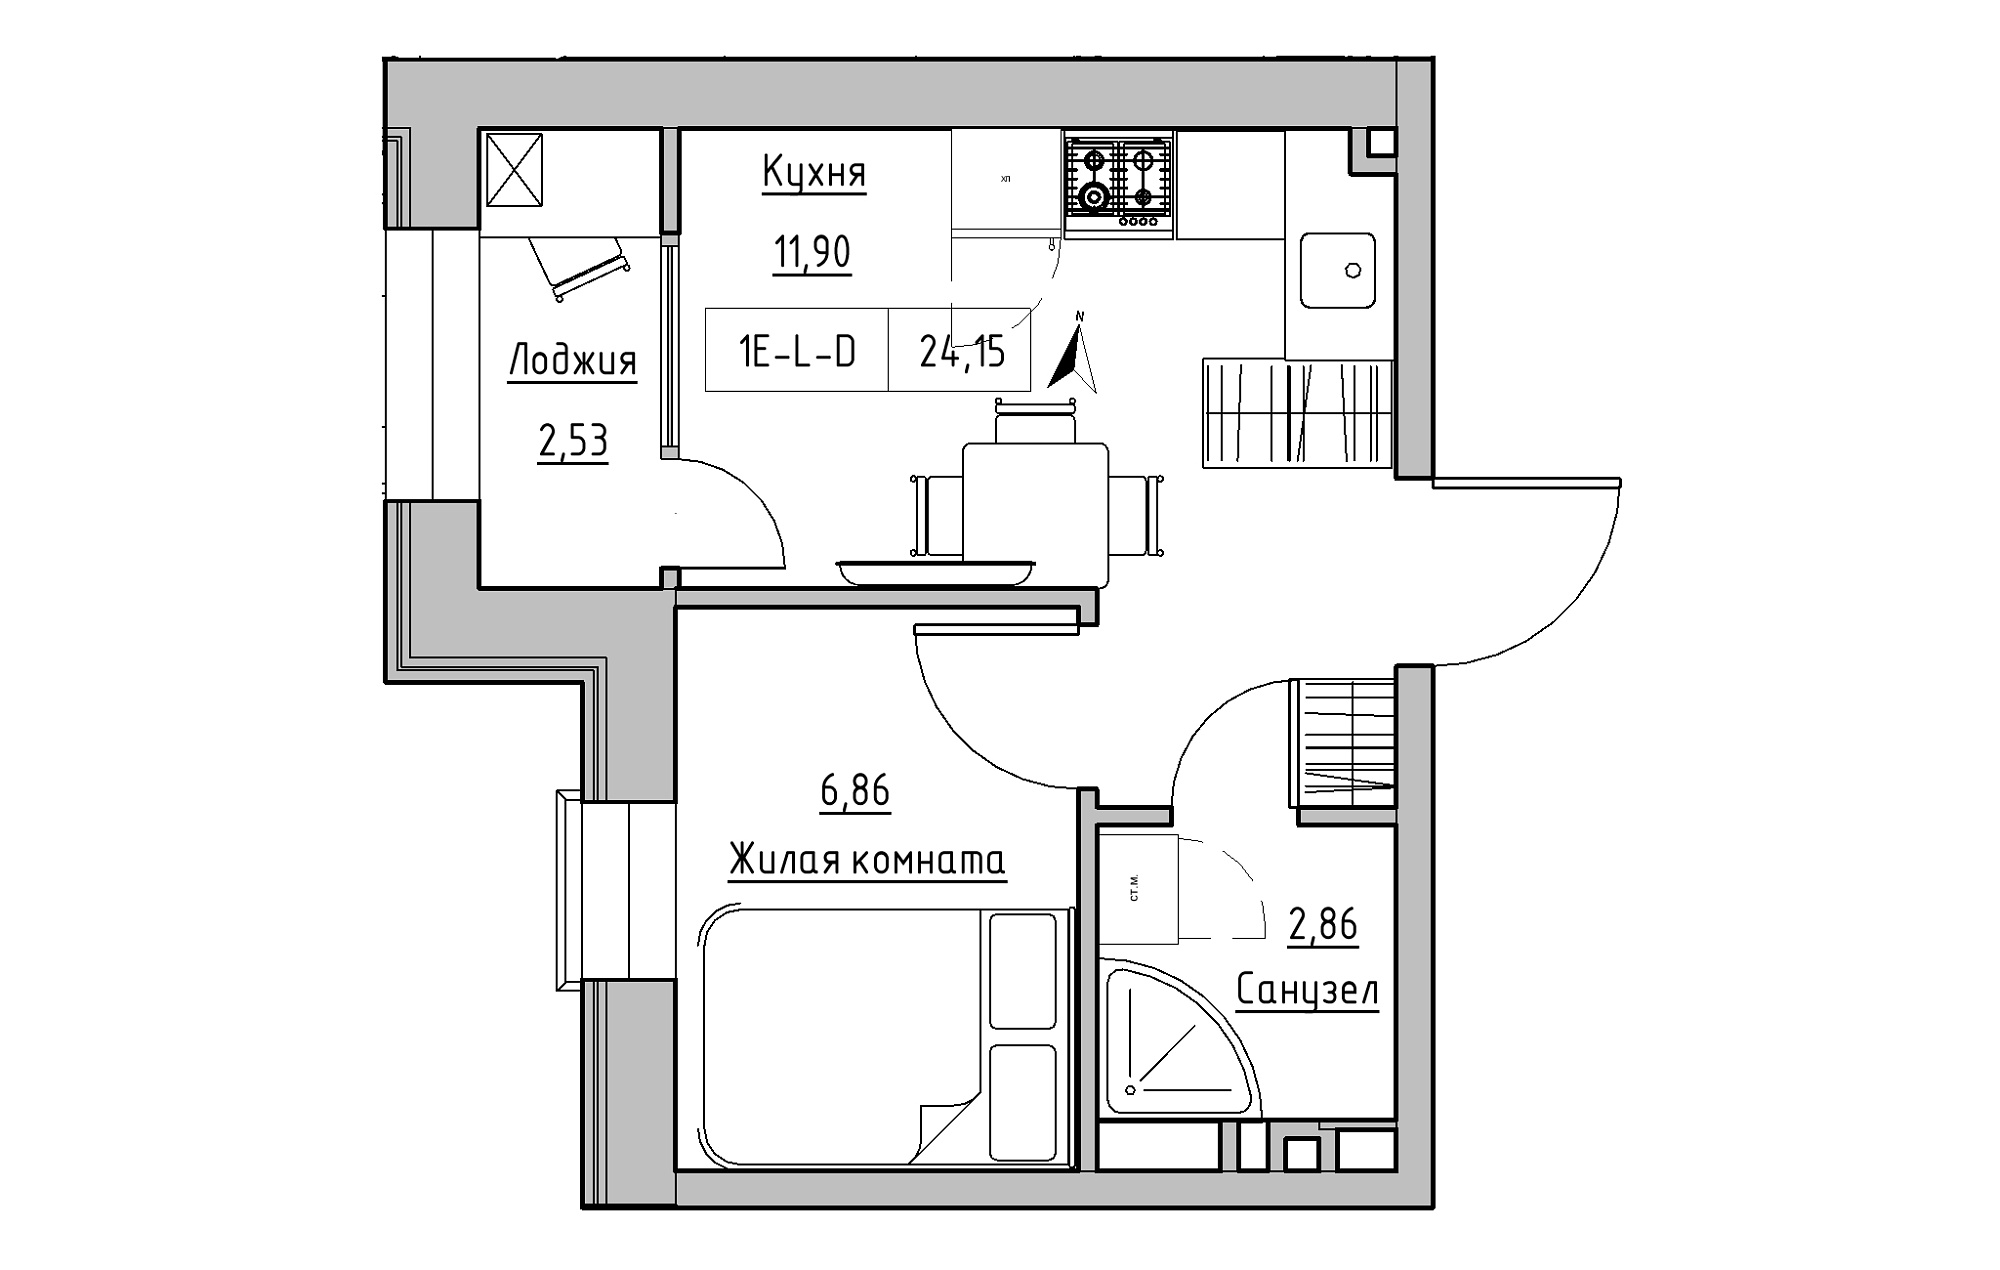 Планировка 1-к квартира площей 24.15м2, KS-019-02/0001.